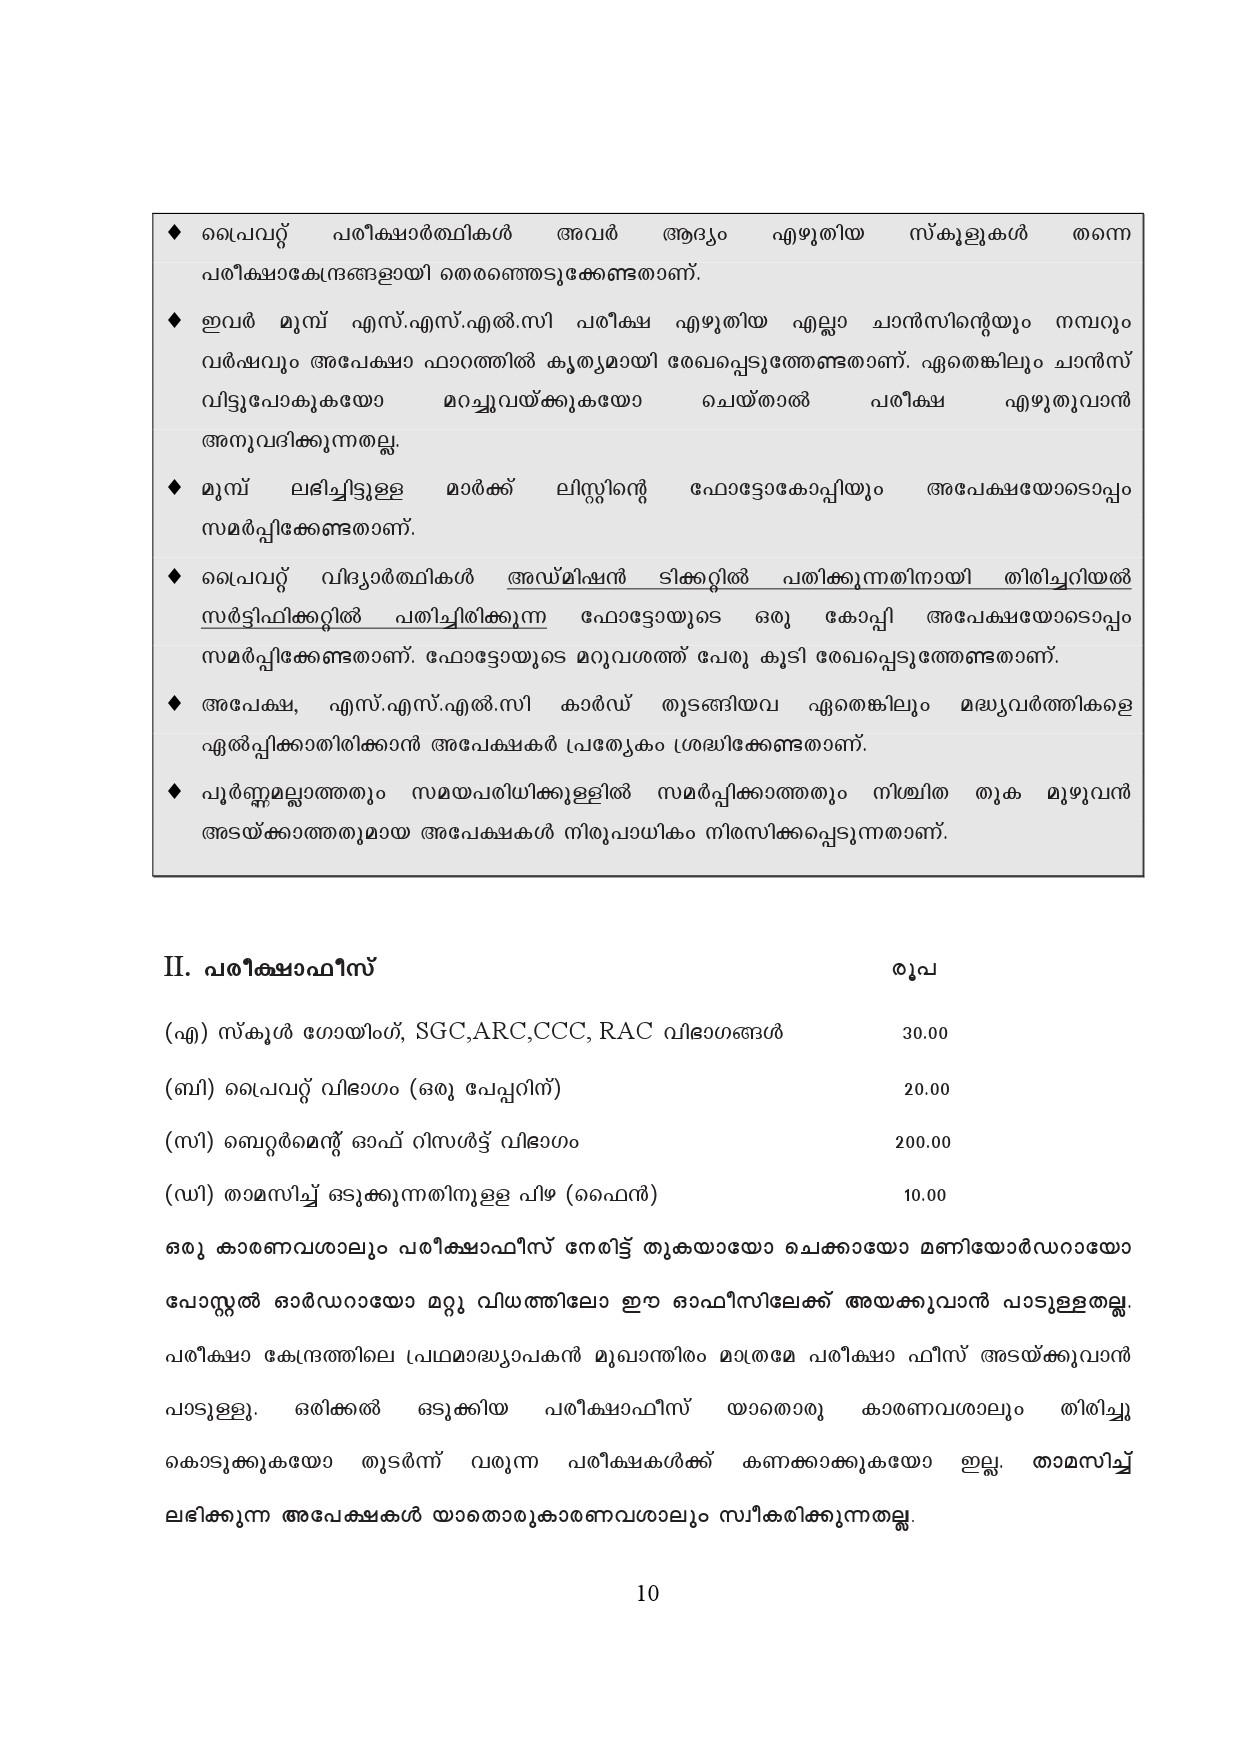 Kerala SSLC Exam Result 2019 - Notification Image 10